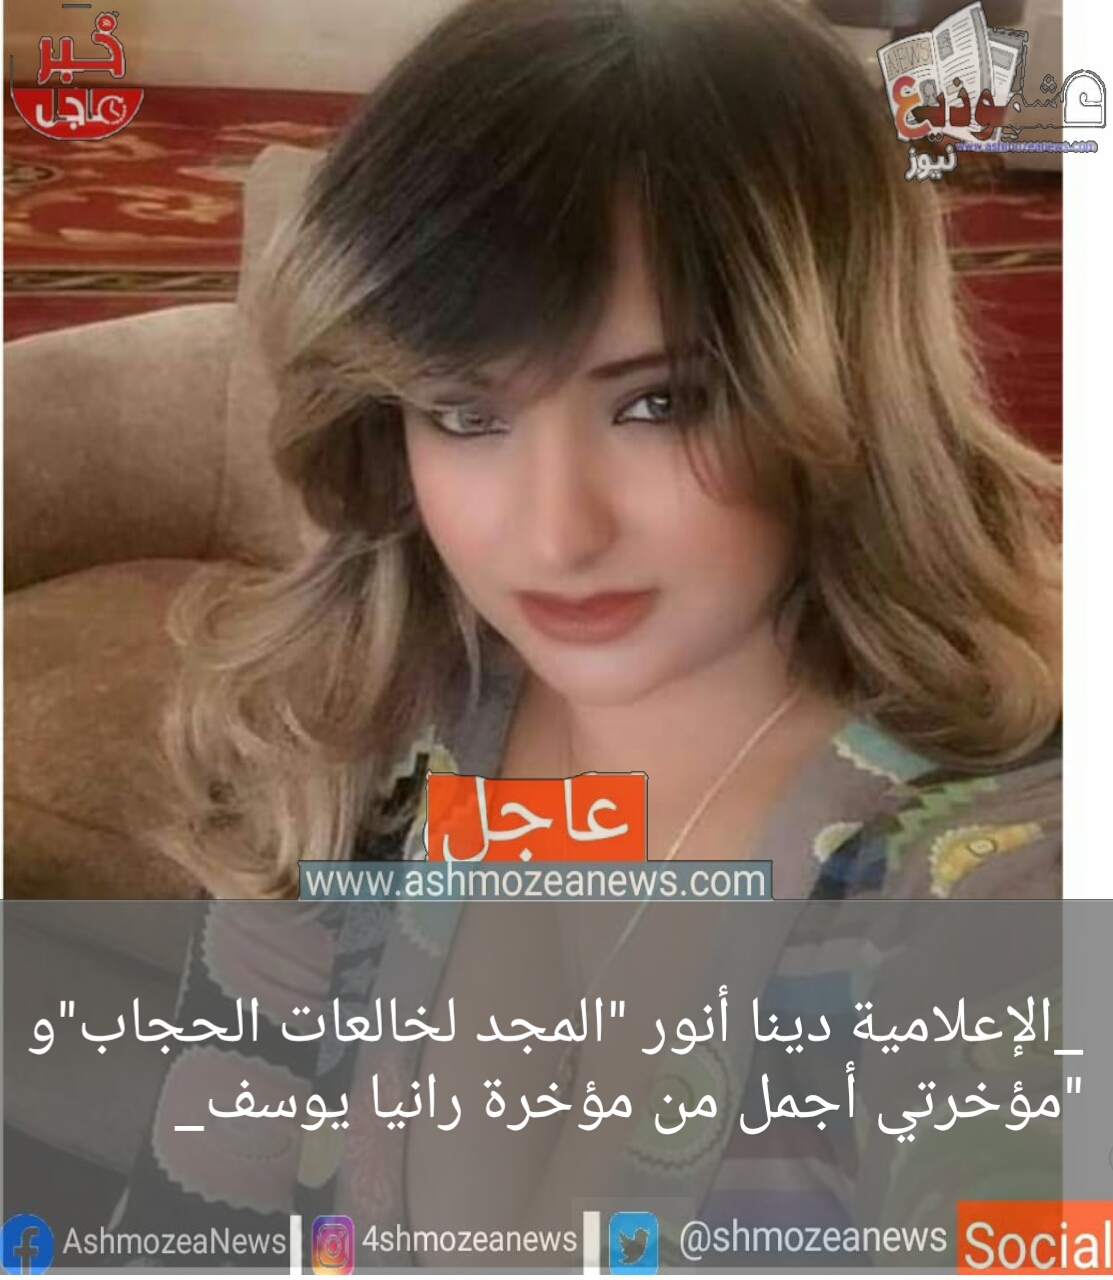 الإعلامية دينا أنور "المجد لخالعات الحجاب"و "مؤخرتي أجمل من مؤخرة رانيا يوسف